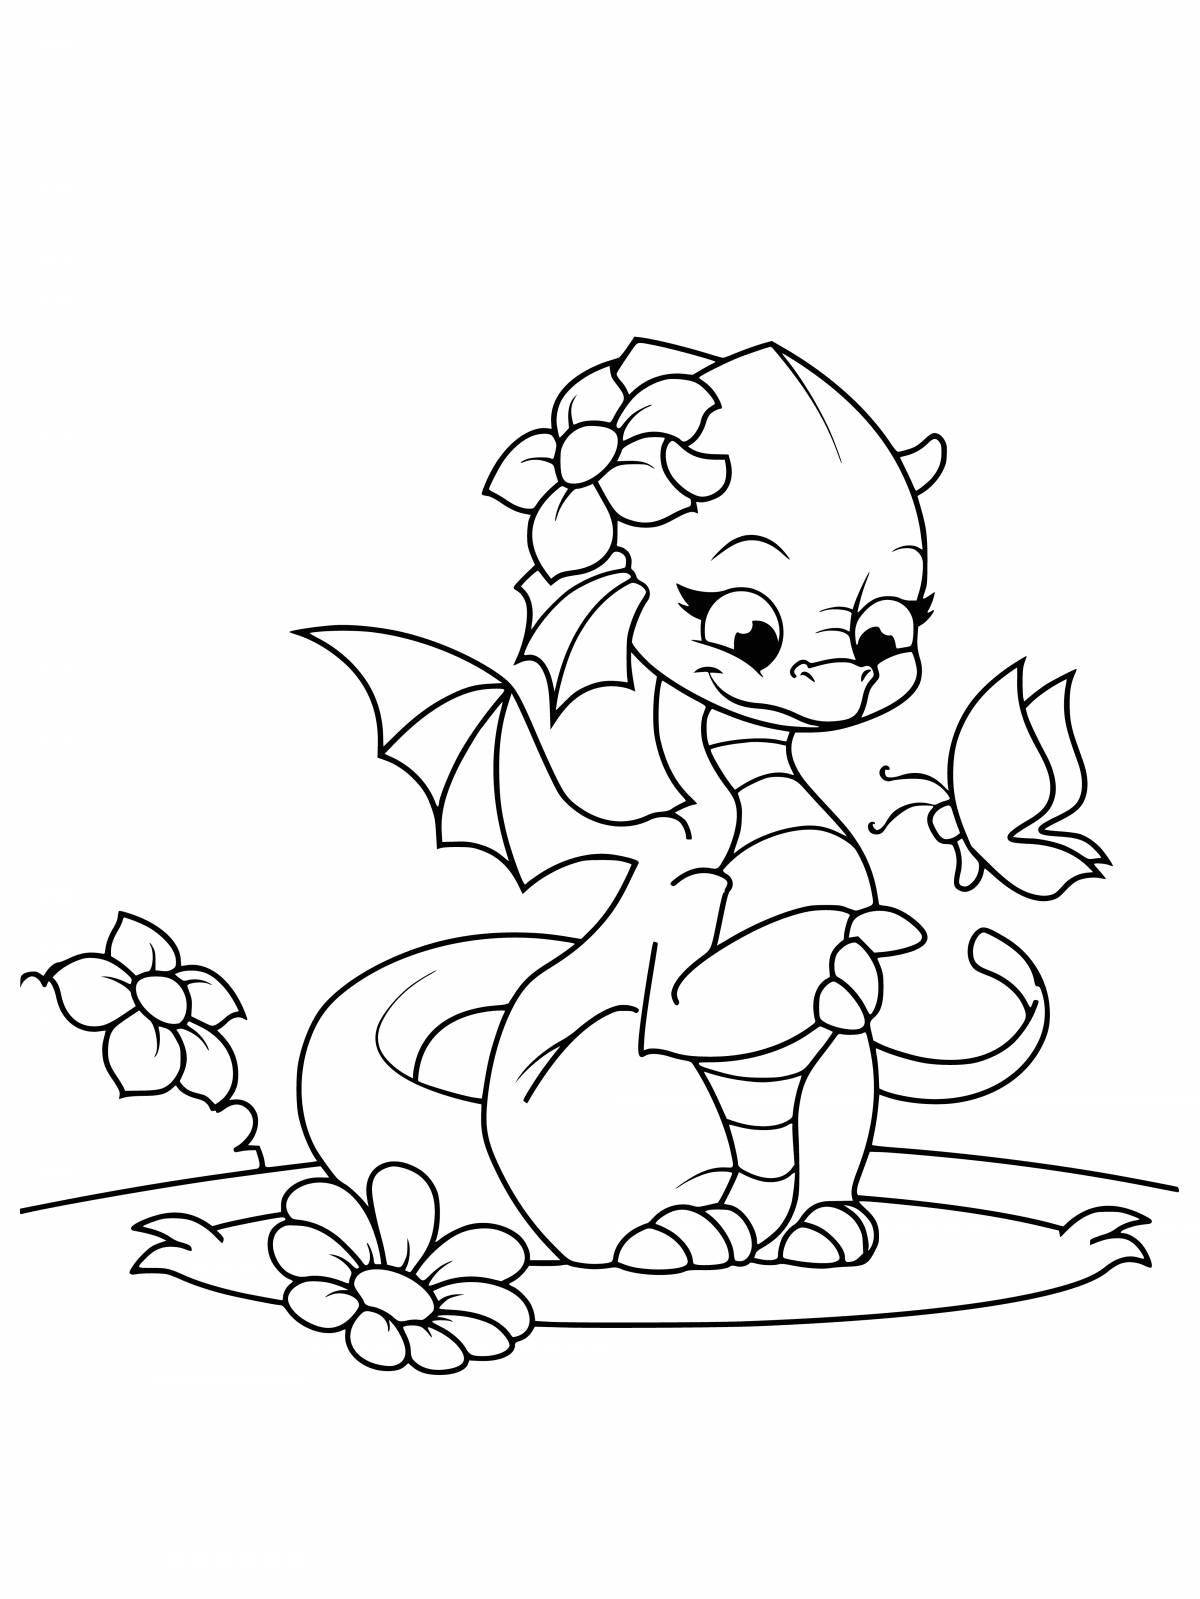 Generous dragon coloring book